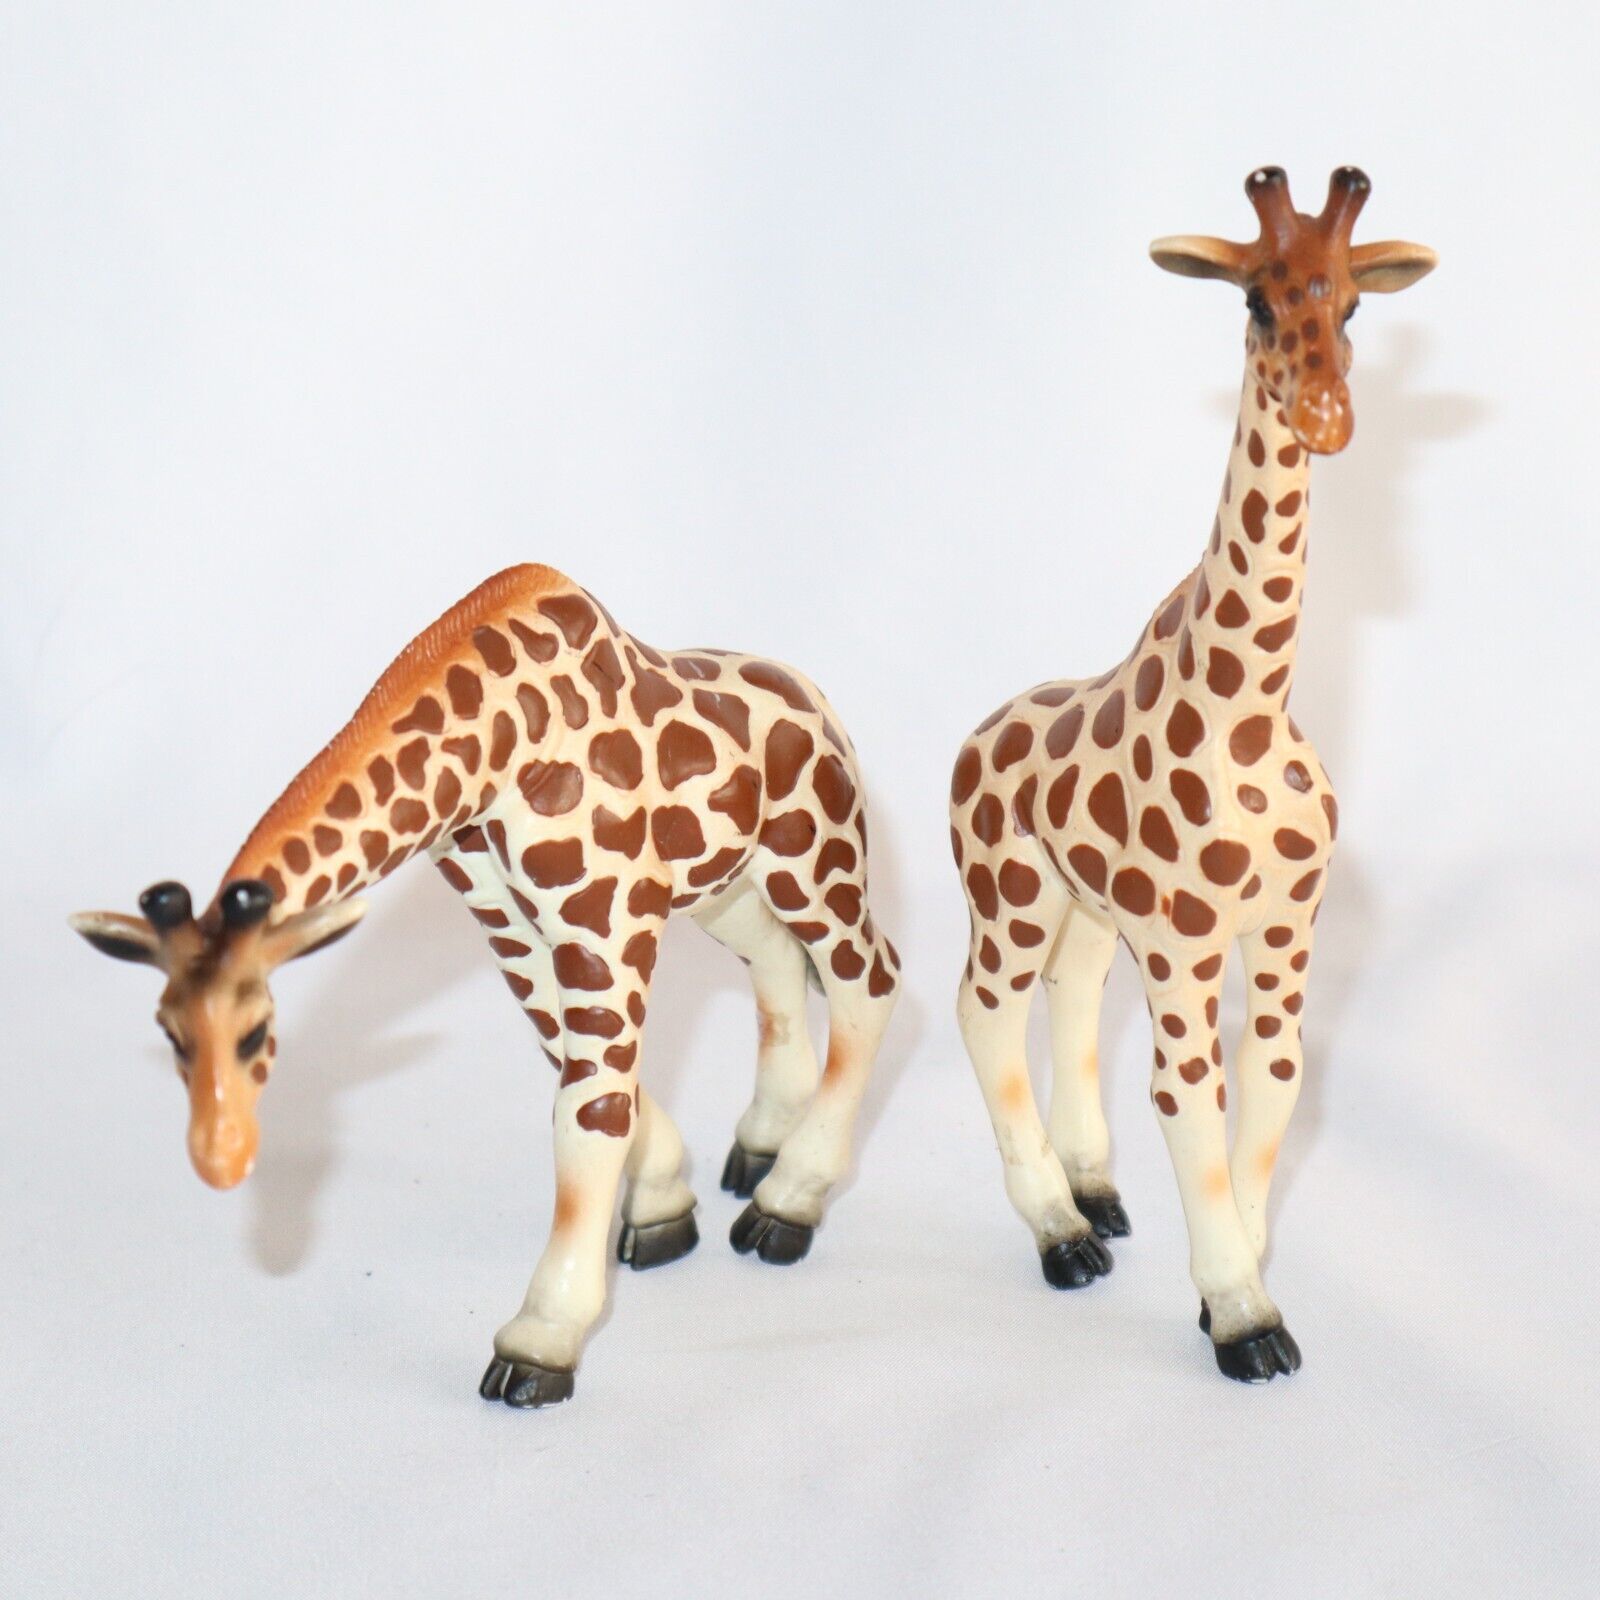 Schleich 1998 Wildlife Giraffes PVC figurines x2